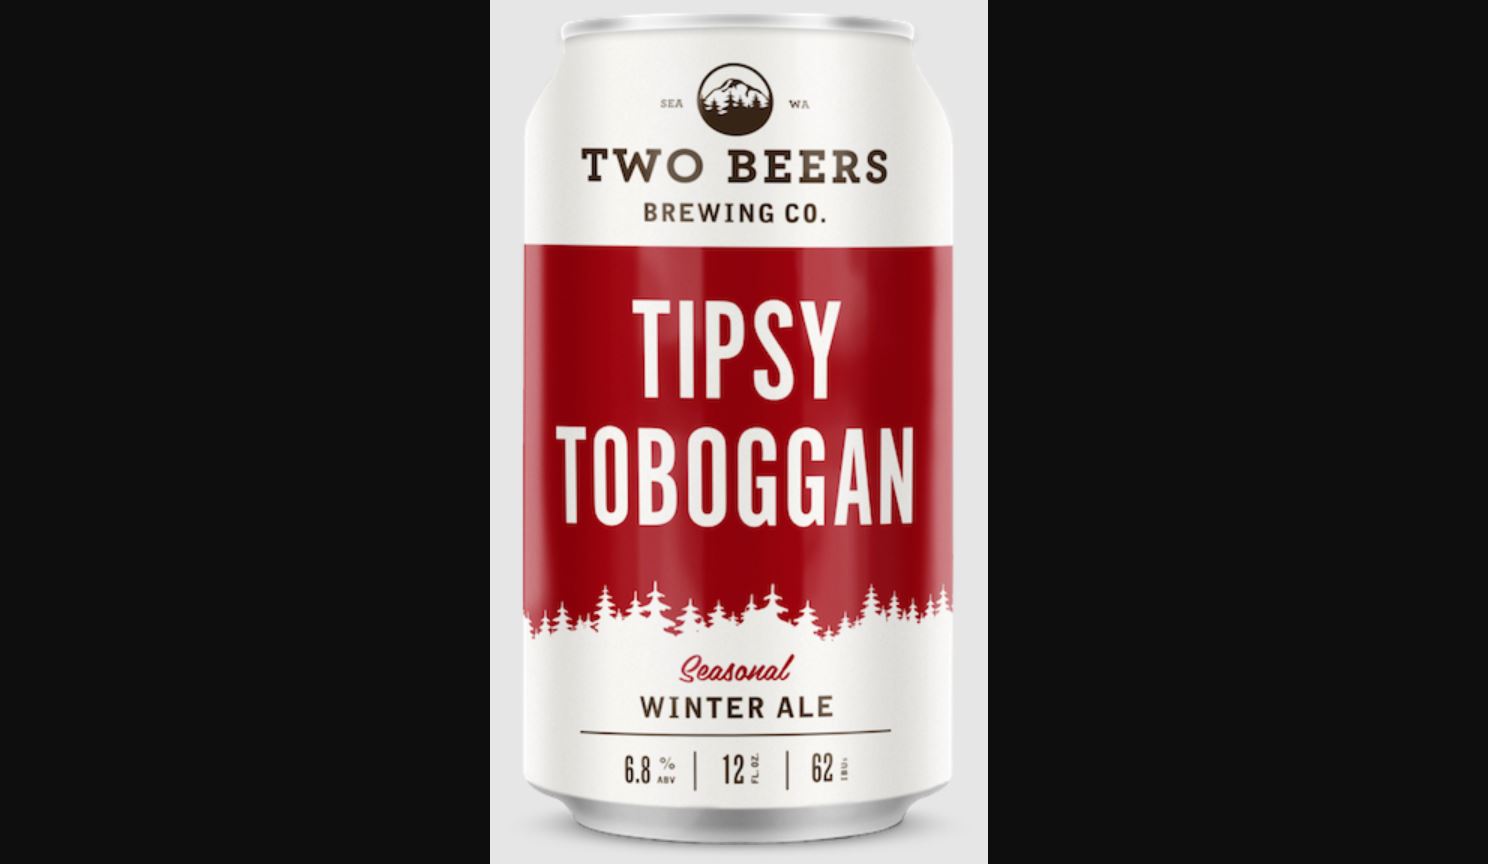 Two Beers Tipsy Toboggan